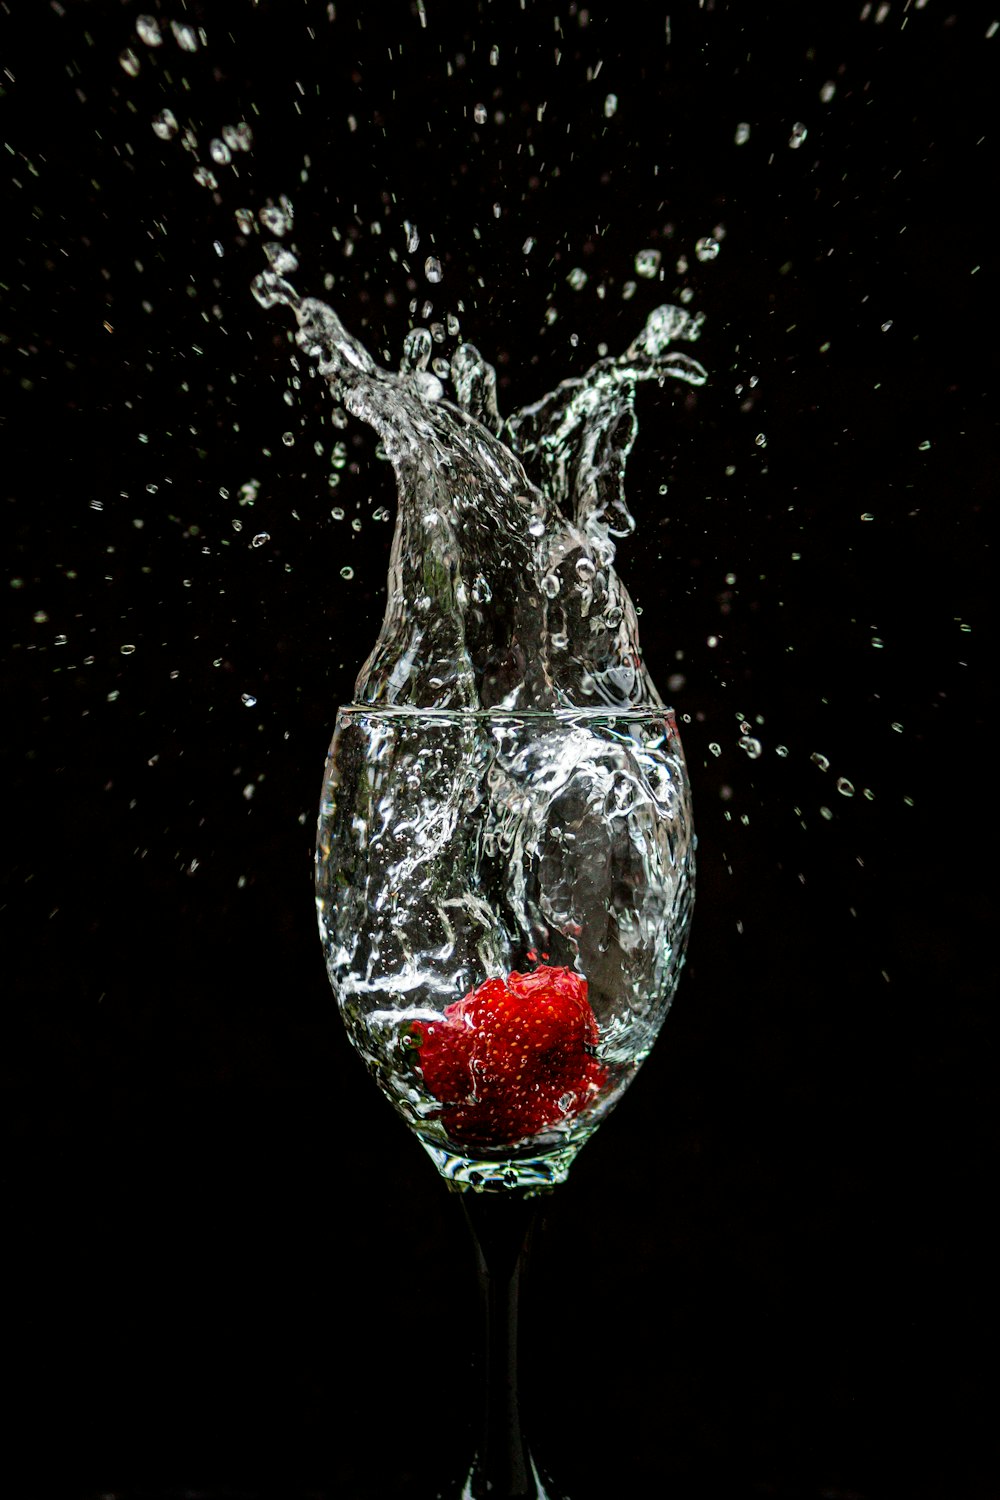 20+ Splash Pictures [HQ] | Download Free Images on Unsplash